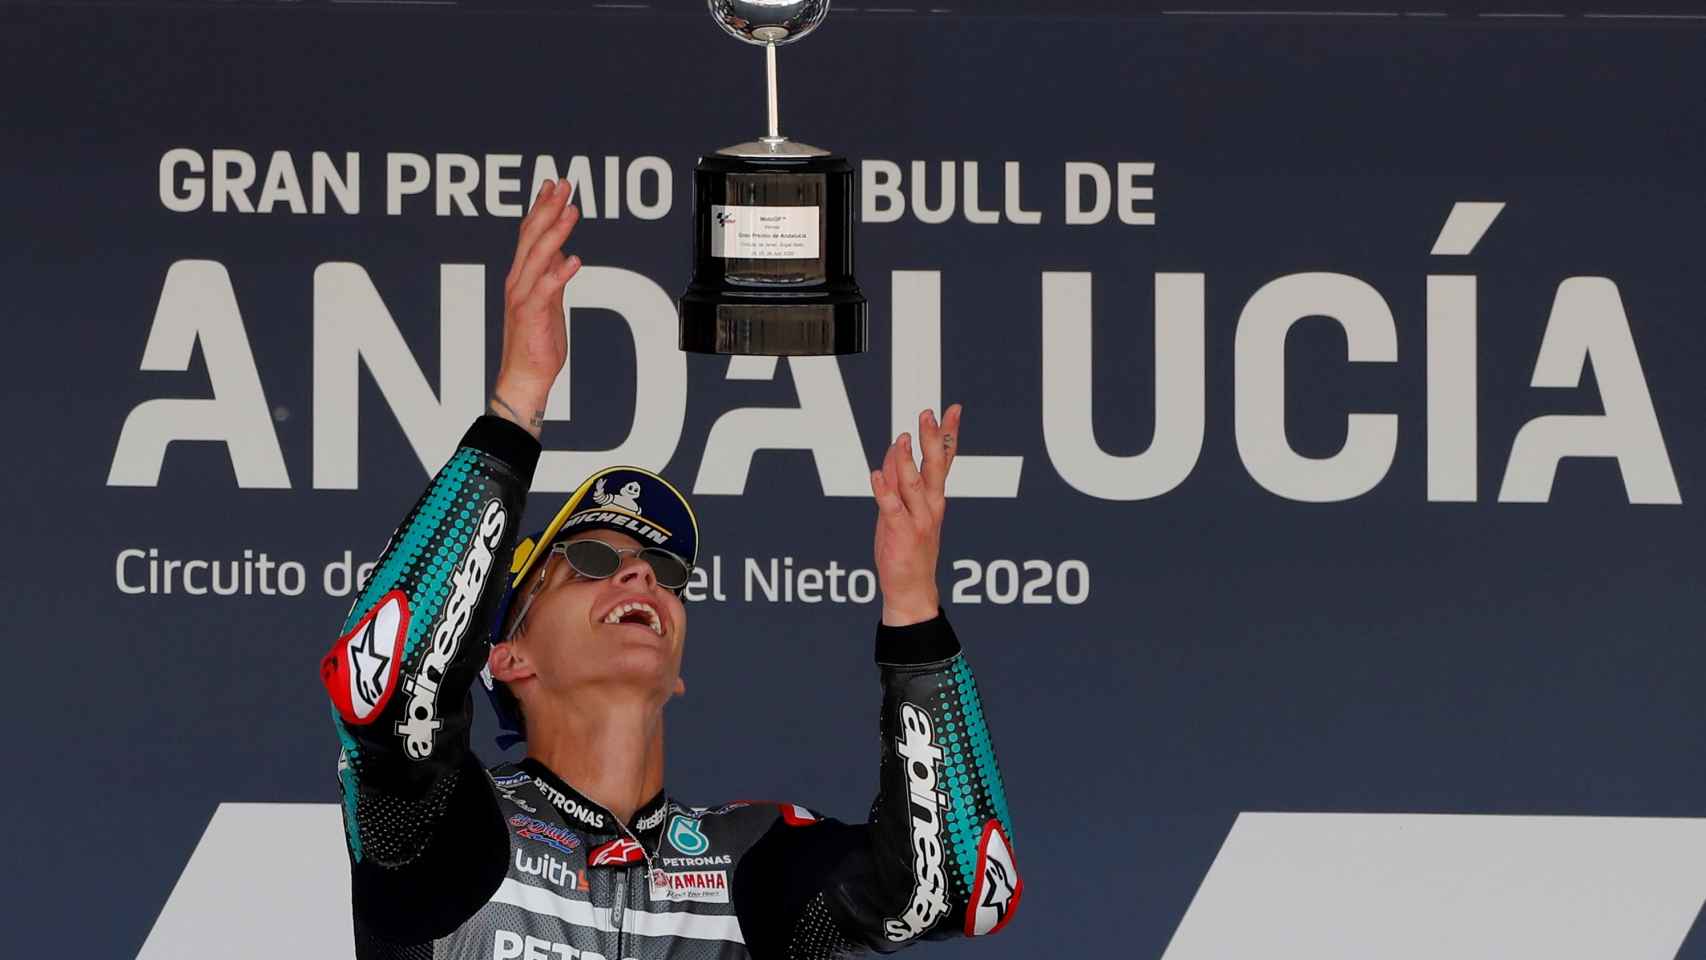 Fabio Quartararo, piloto de Moto GP, celebra la victoria